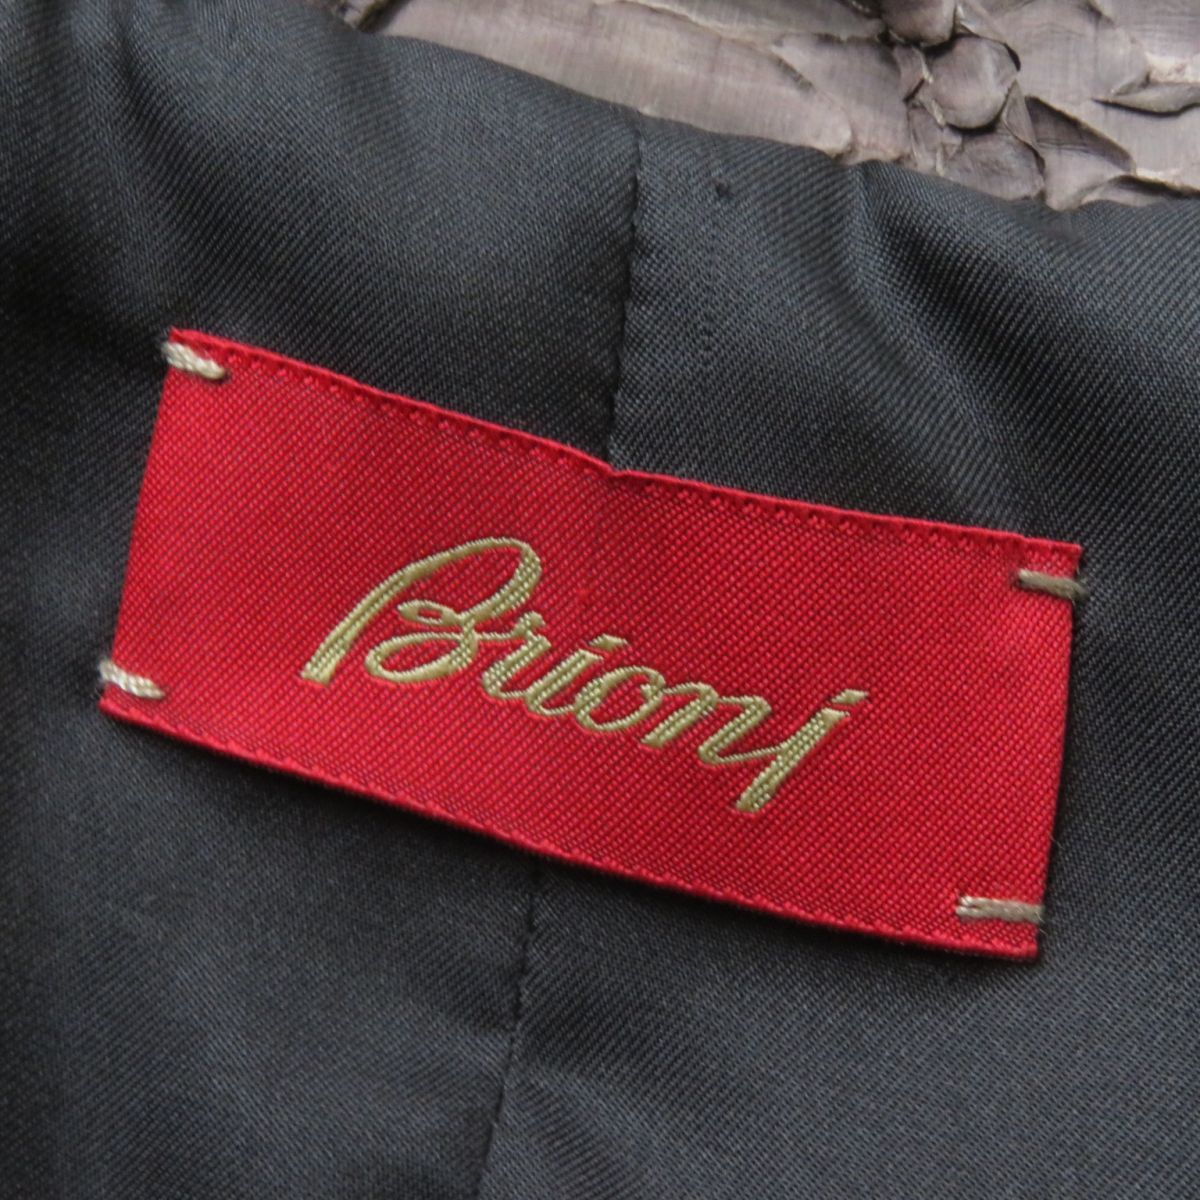  превосходный товар *Brioni Brioni подкладка шелк 100% Layered способ питон кожа одиночный жакет женский Brown 42 Италия производства 